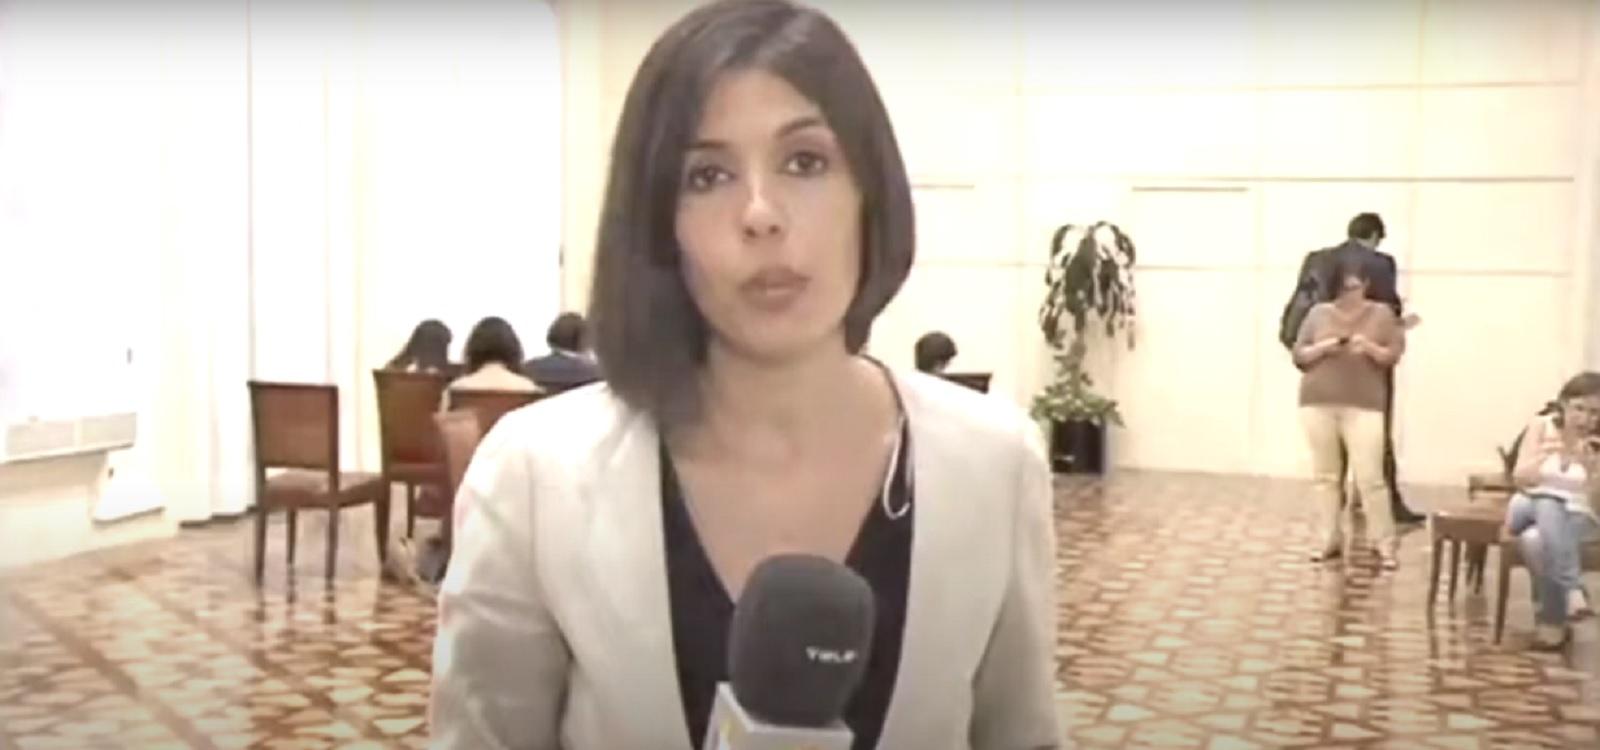 La periodista de Telemadrid María Martinez dando una noticia